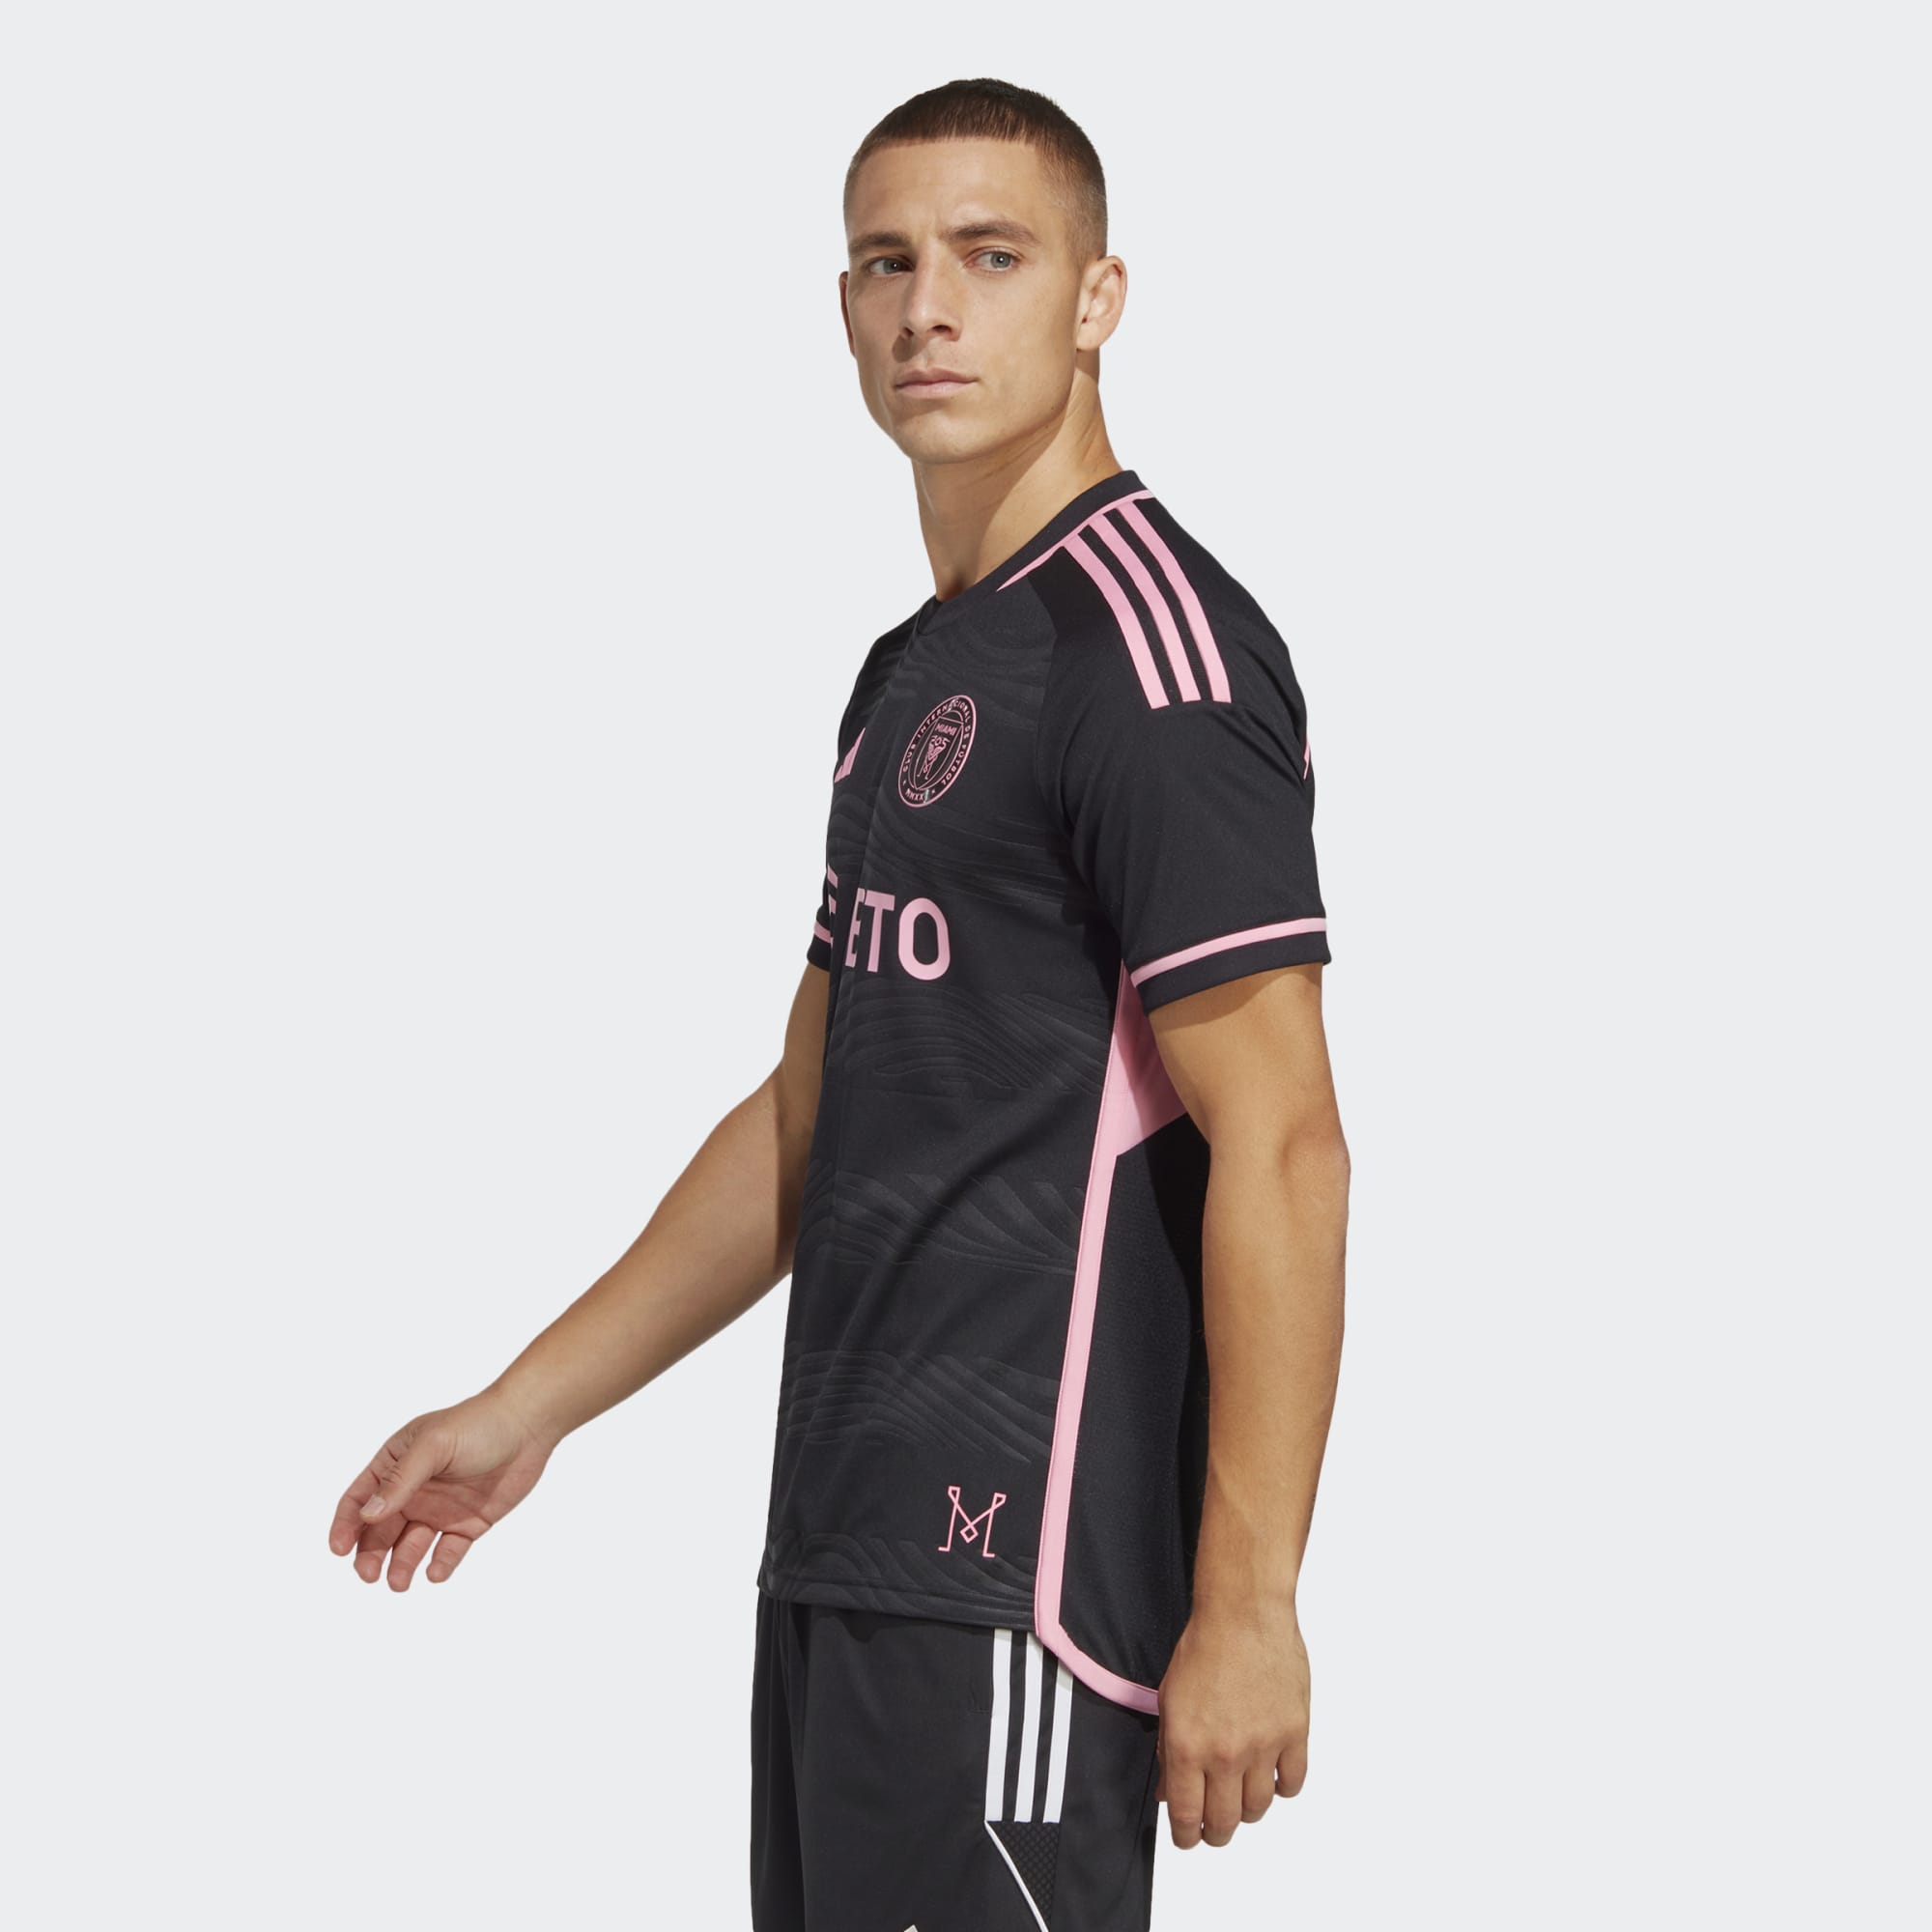 Men's Inter Miami CF adidas Pink 2021 Goalkeeper Jersey